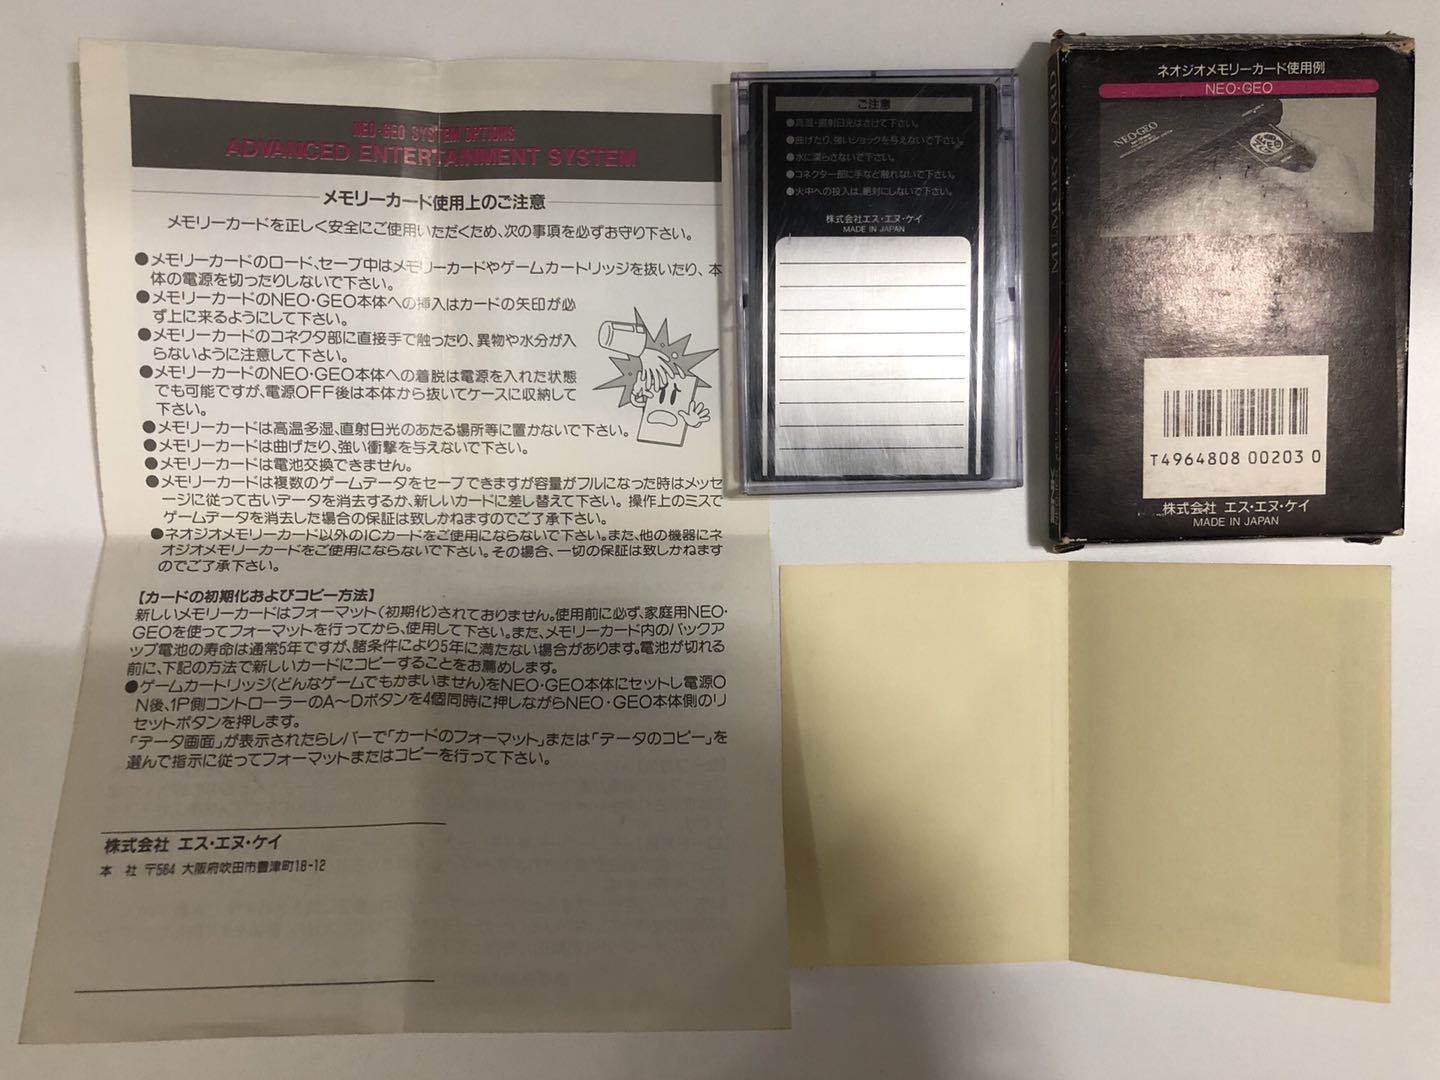 初売りセール SNK NEO GEO ネオジオ メモリー カード フルセット その他